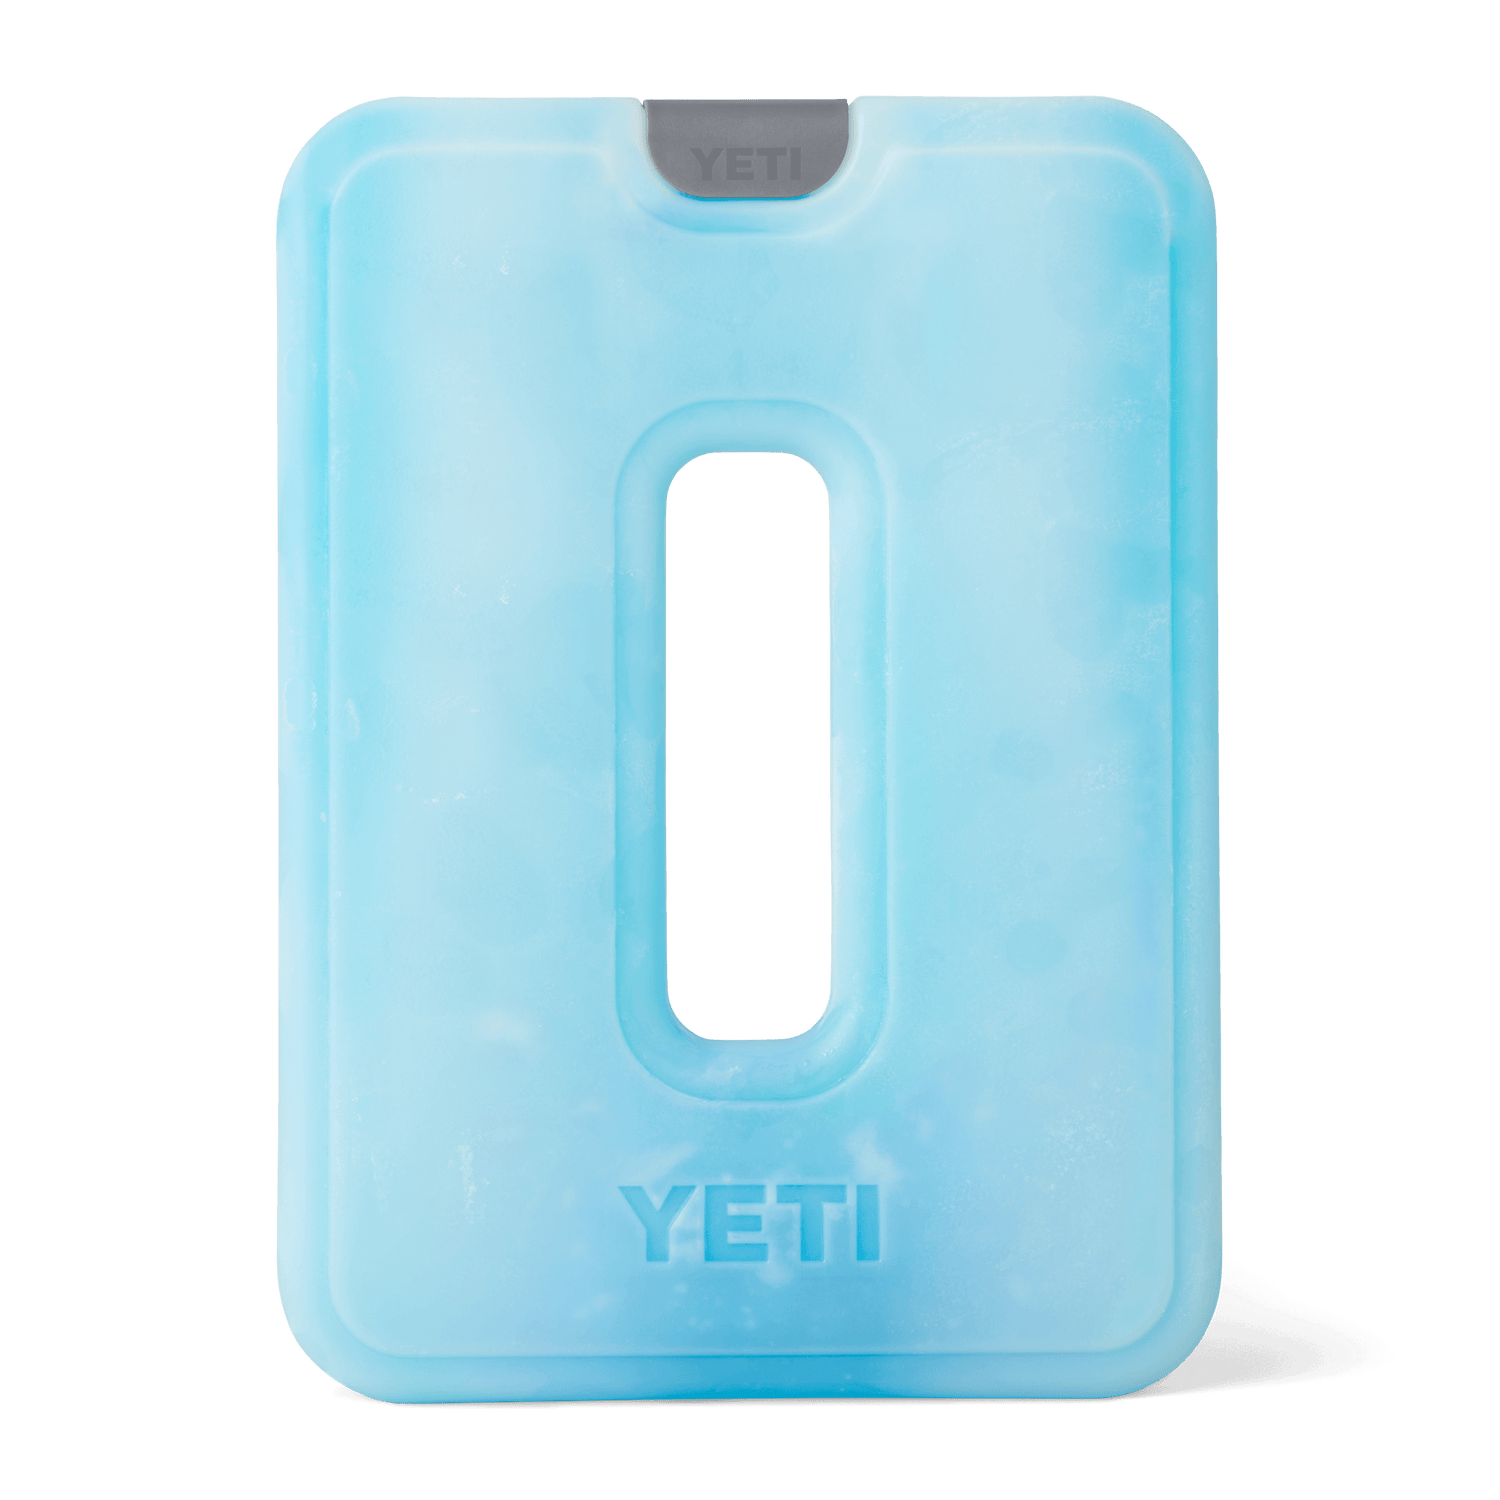 YETI Yeti Thin Ice Large Ice Pack Clear